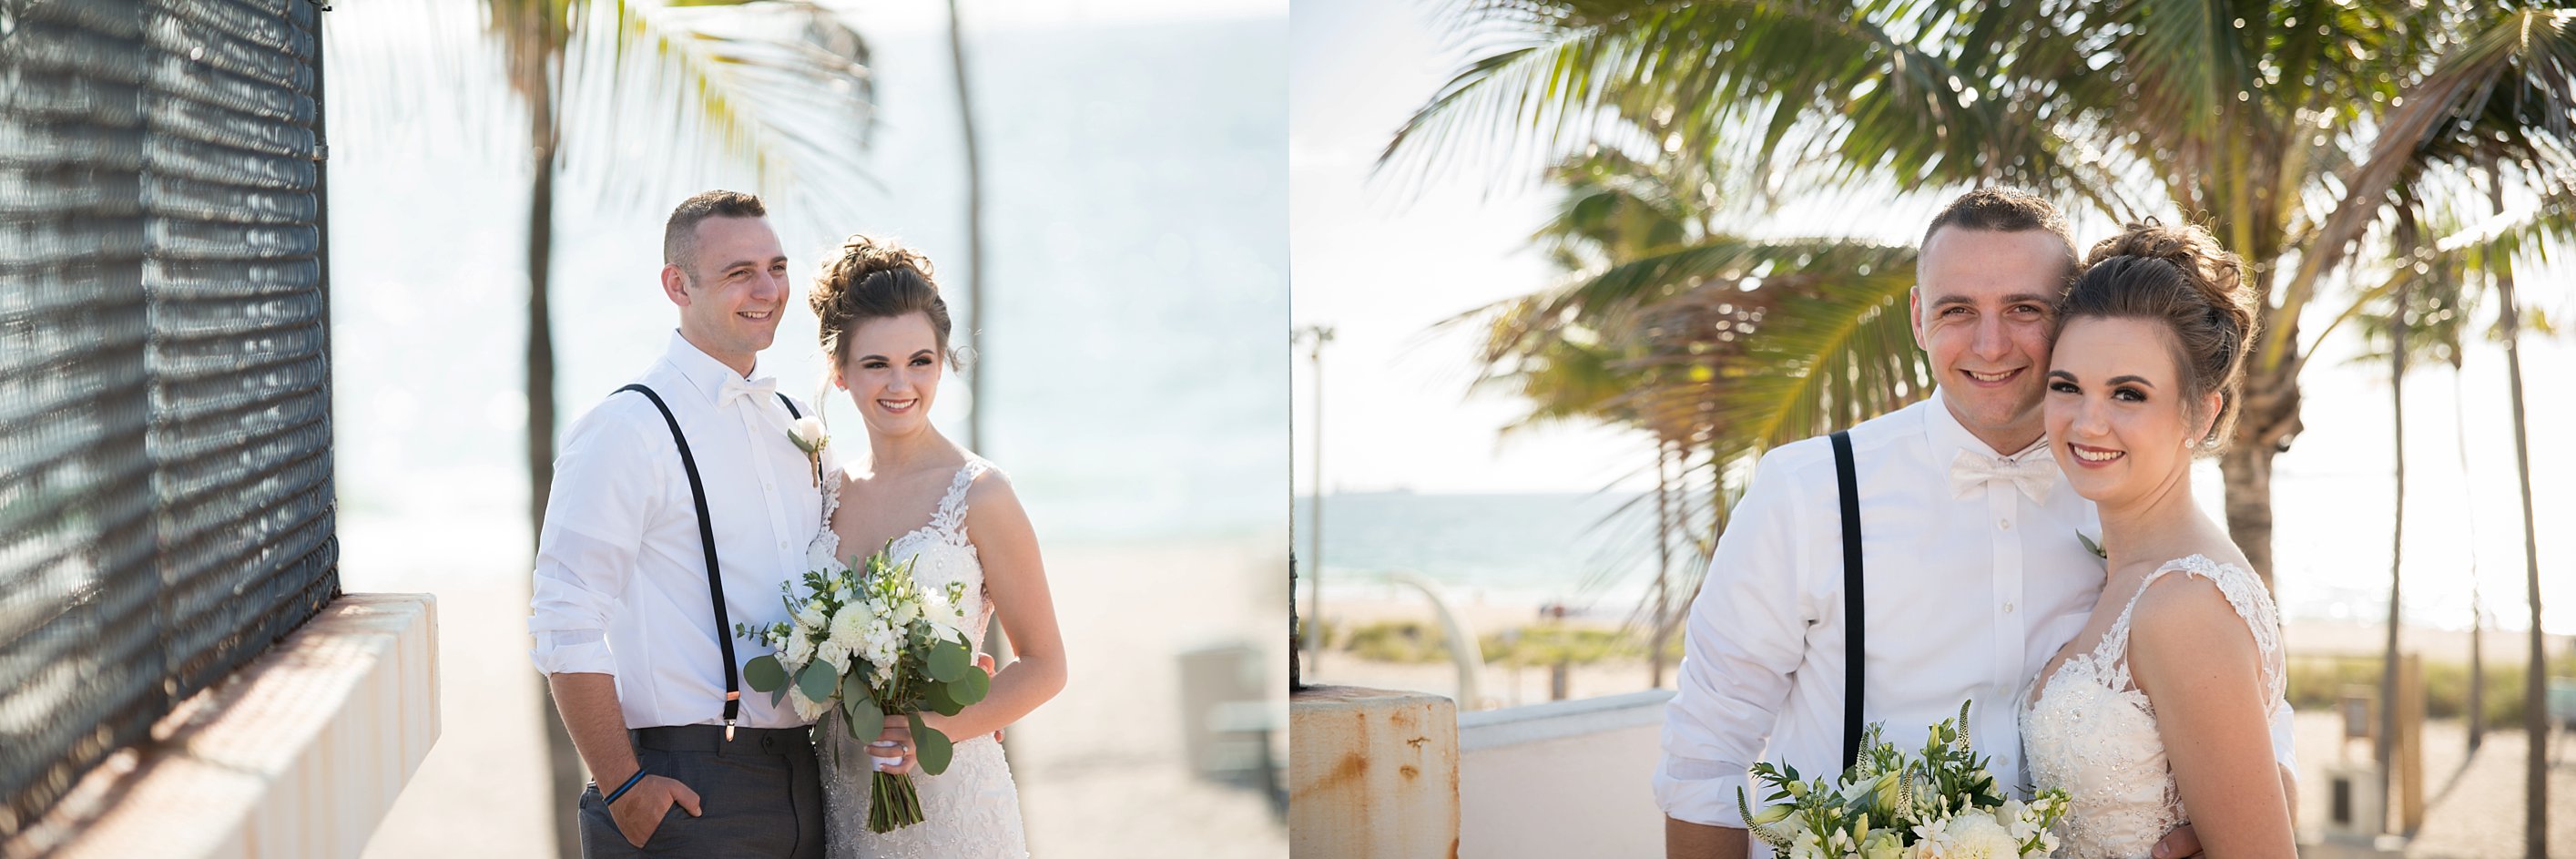 Bahai Mar beach wedding photos